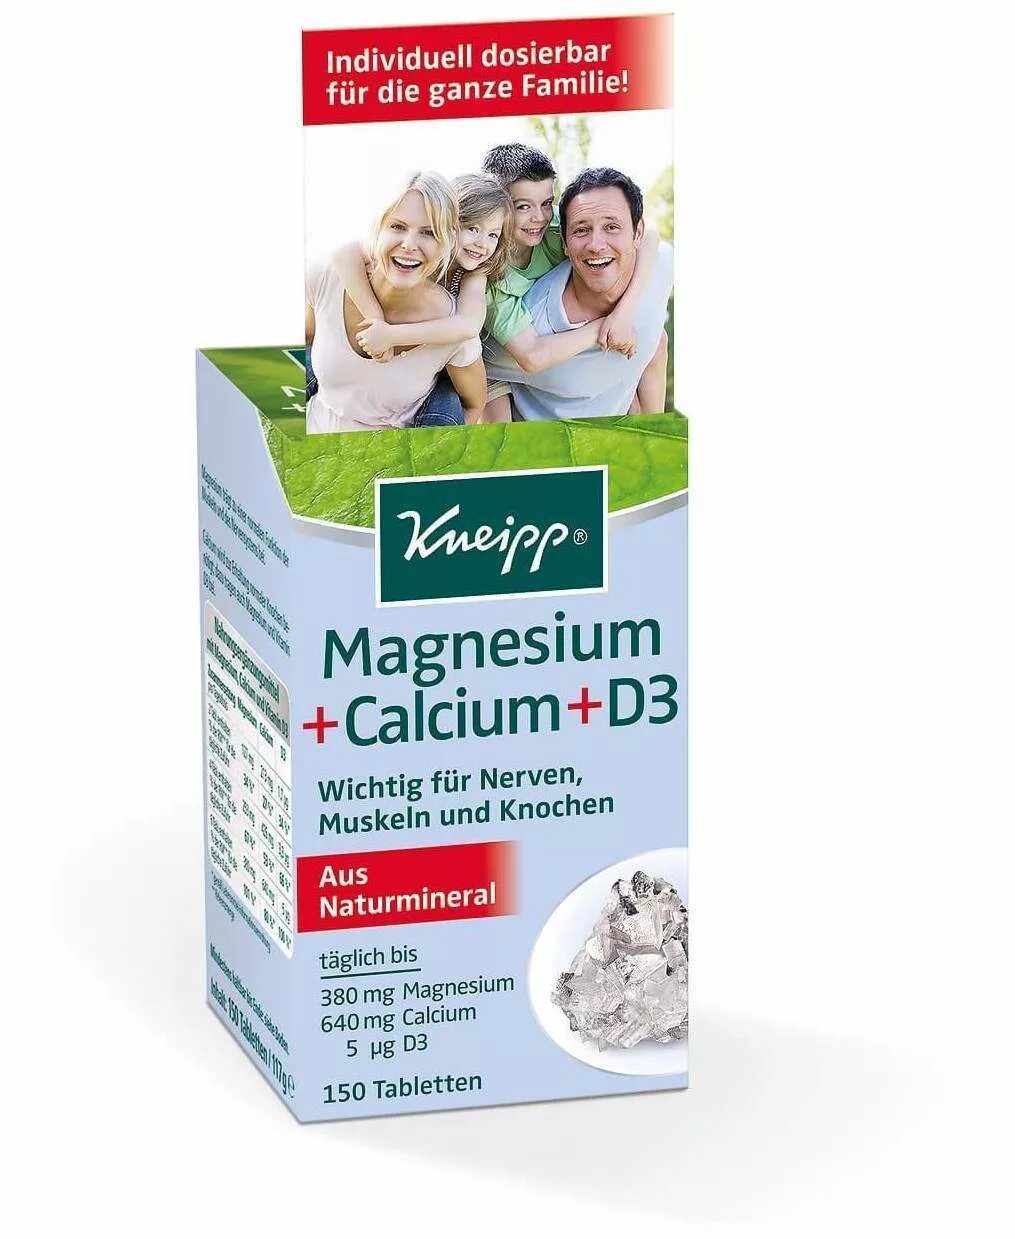 Витамины Kneipp Magnesium Calcium d3. Magnesium Calcium d3 Kneipp. Kneipp магний + кальций + d3 таблетки, 150 шт. Calcium d3 порошок. Таблетки кальций магний д3